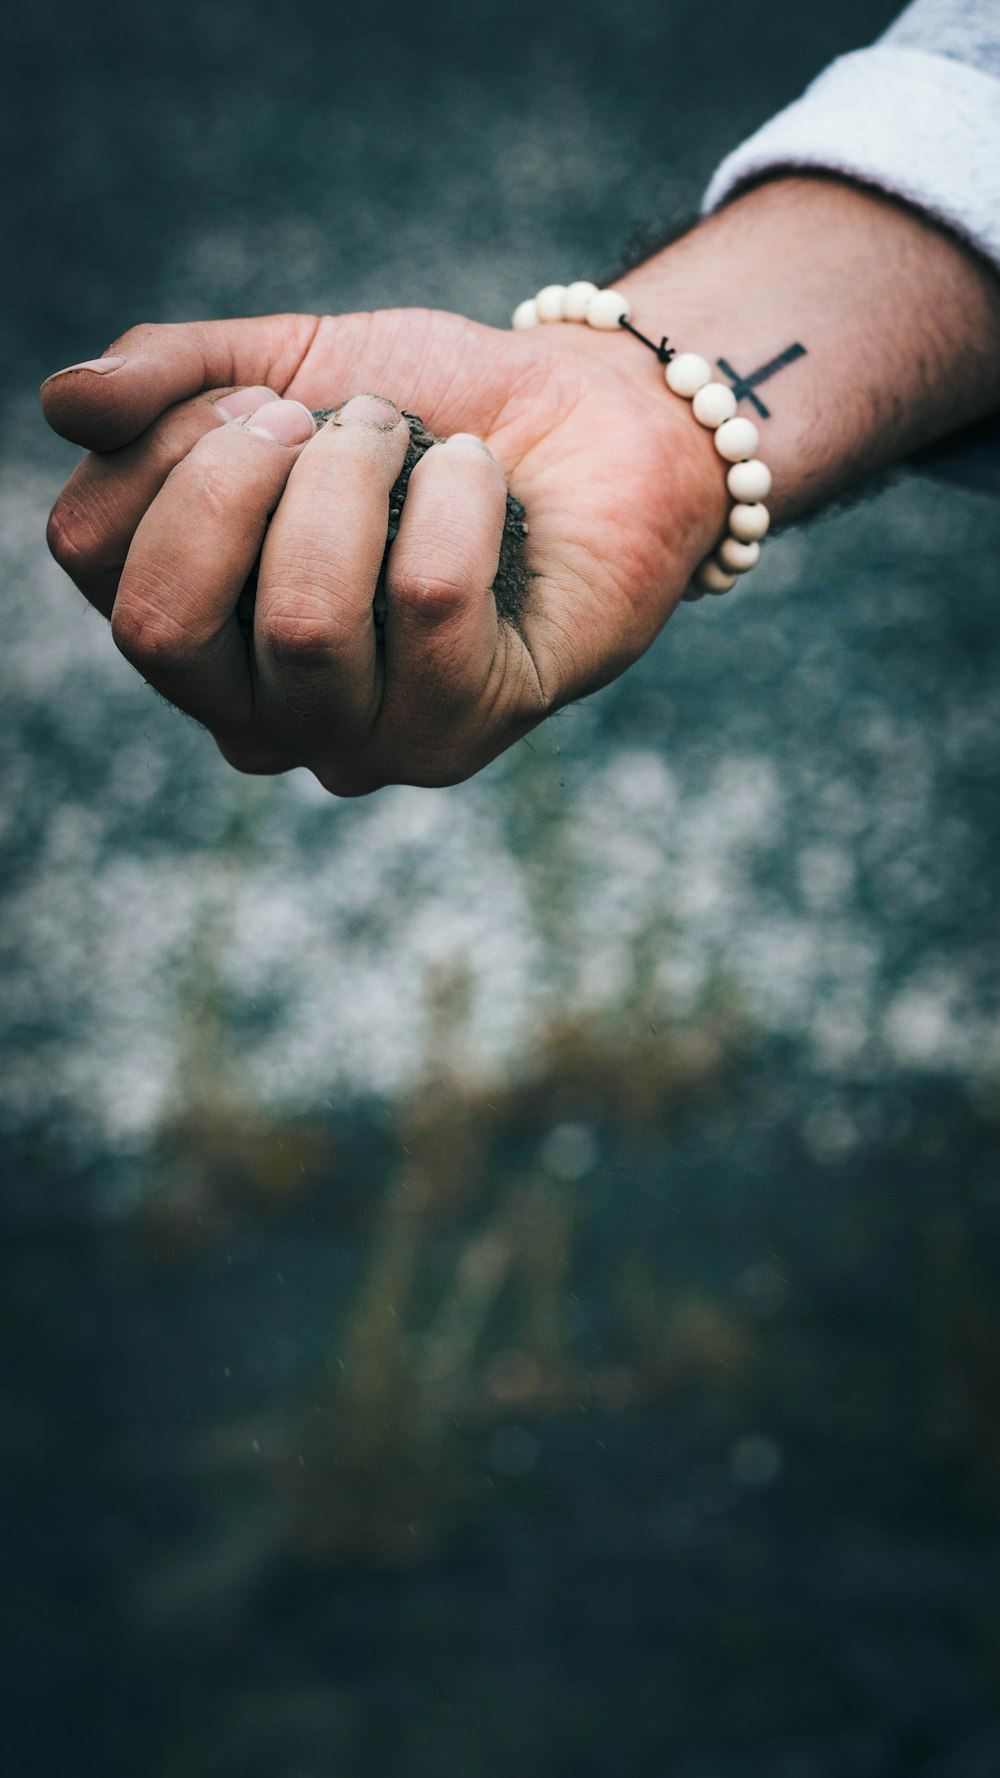 personne portant un bracelet blanc en perles avec de la saleté à la main